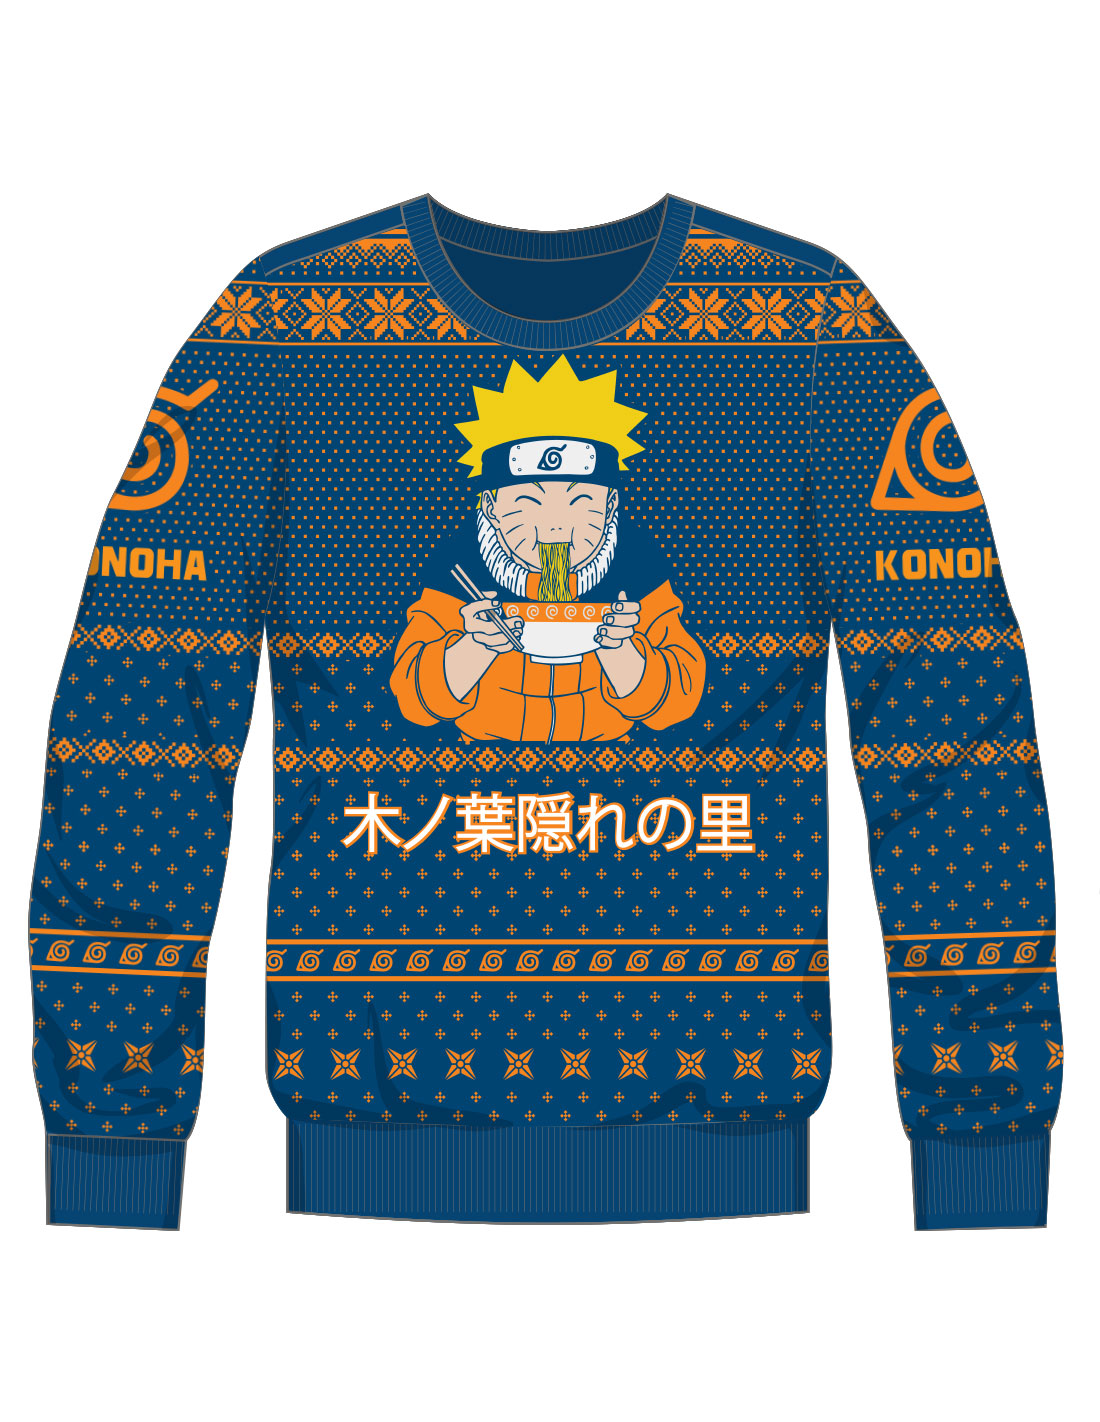 Naruto Sweater - Ichiraku Ramen Shop 